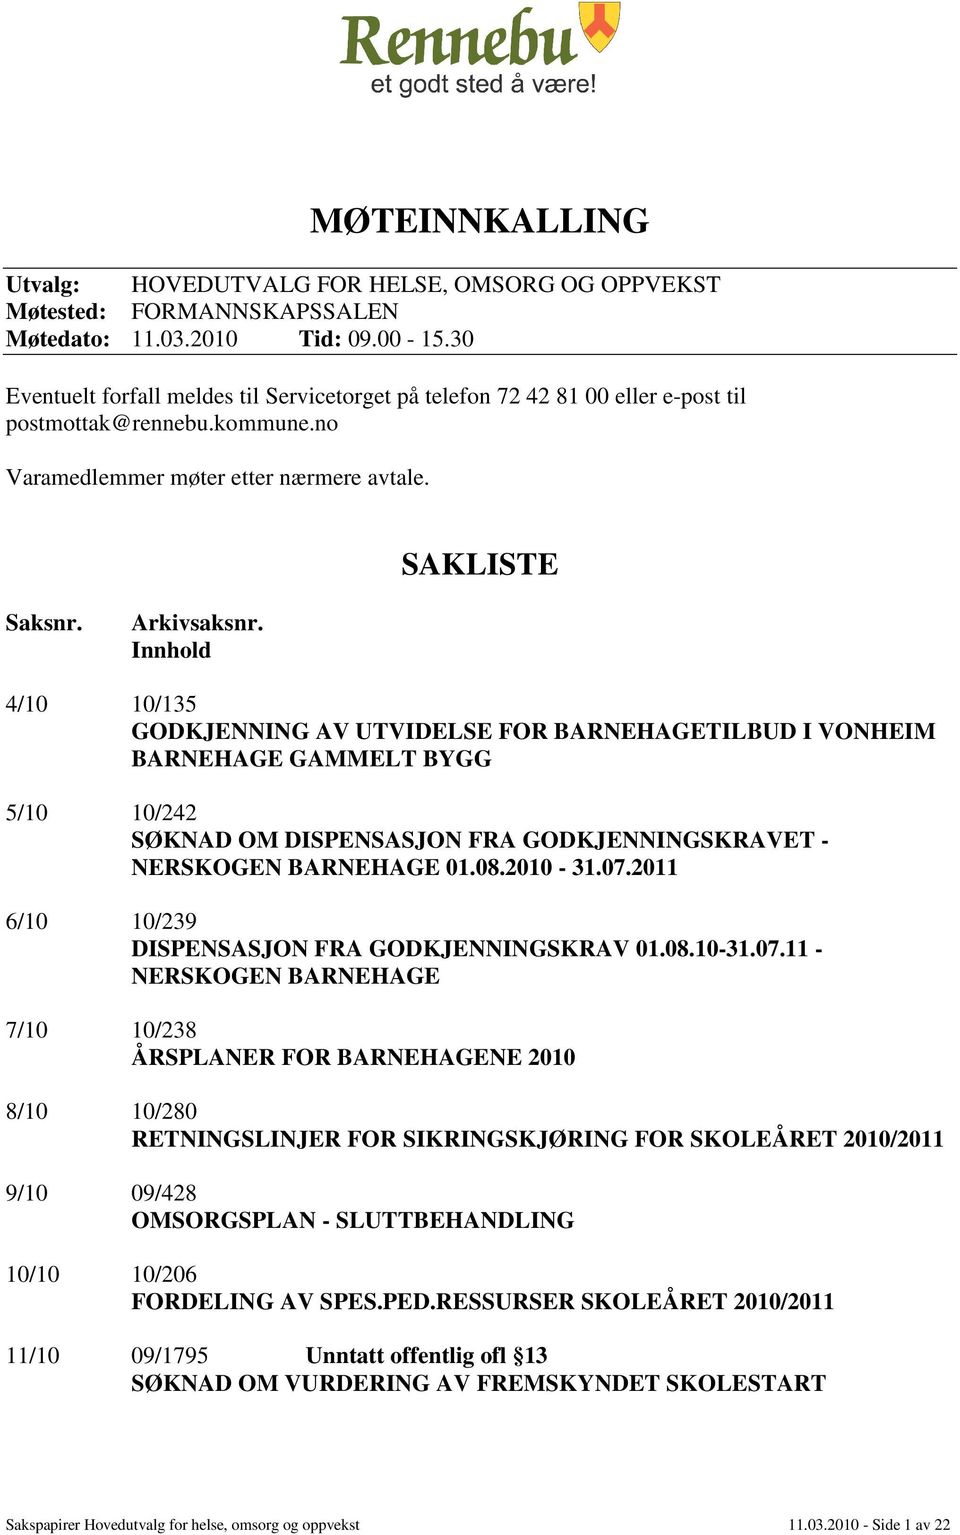 Innhold 4/10 10/135 GODKJENNING AV UTVIDELSE FOR BARNEHAGETILBUD I VONHEIM BARNEHAGE GAMMELT BYGG 5/10 10/242 SØKNAD OM DISPENSASJON FRA GODKJENNINGSKRAVET - NERSKOGEN BARNEHAGE 01.08.2010-31.07.